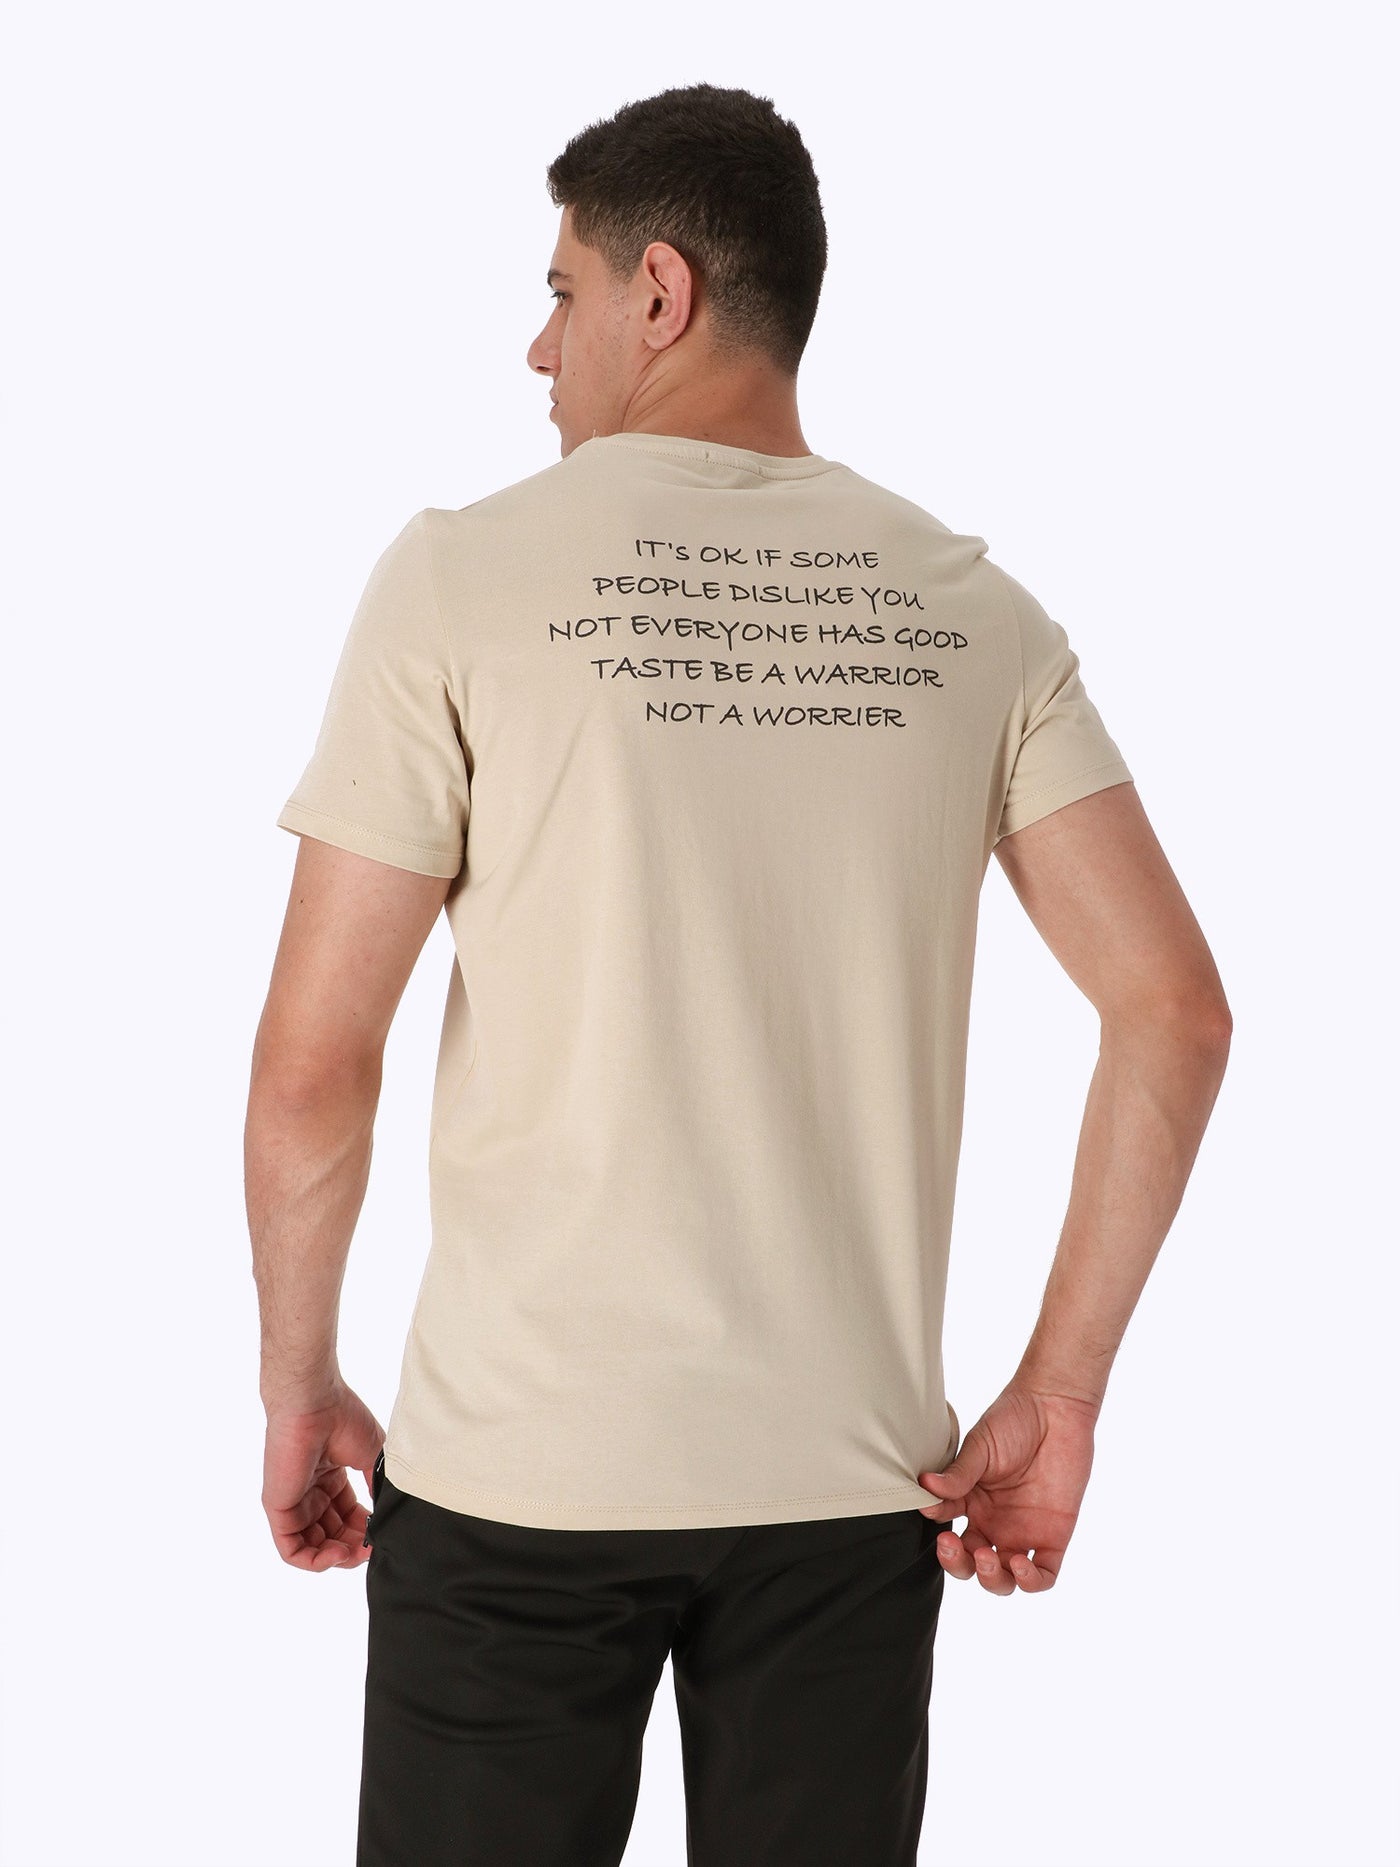 T-Shirt - Back Text Print